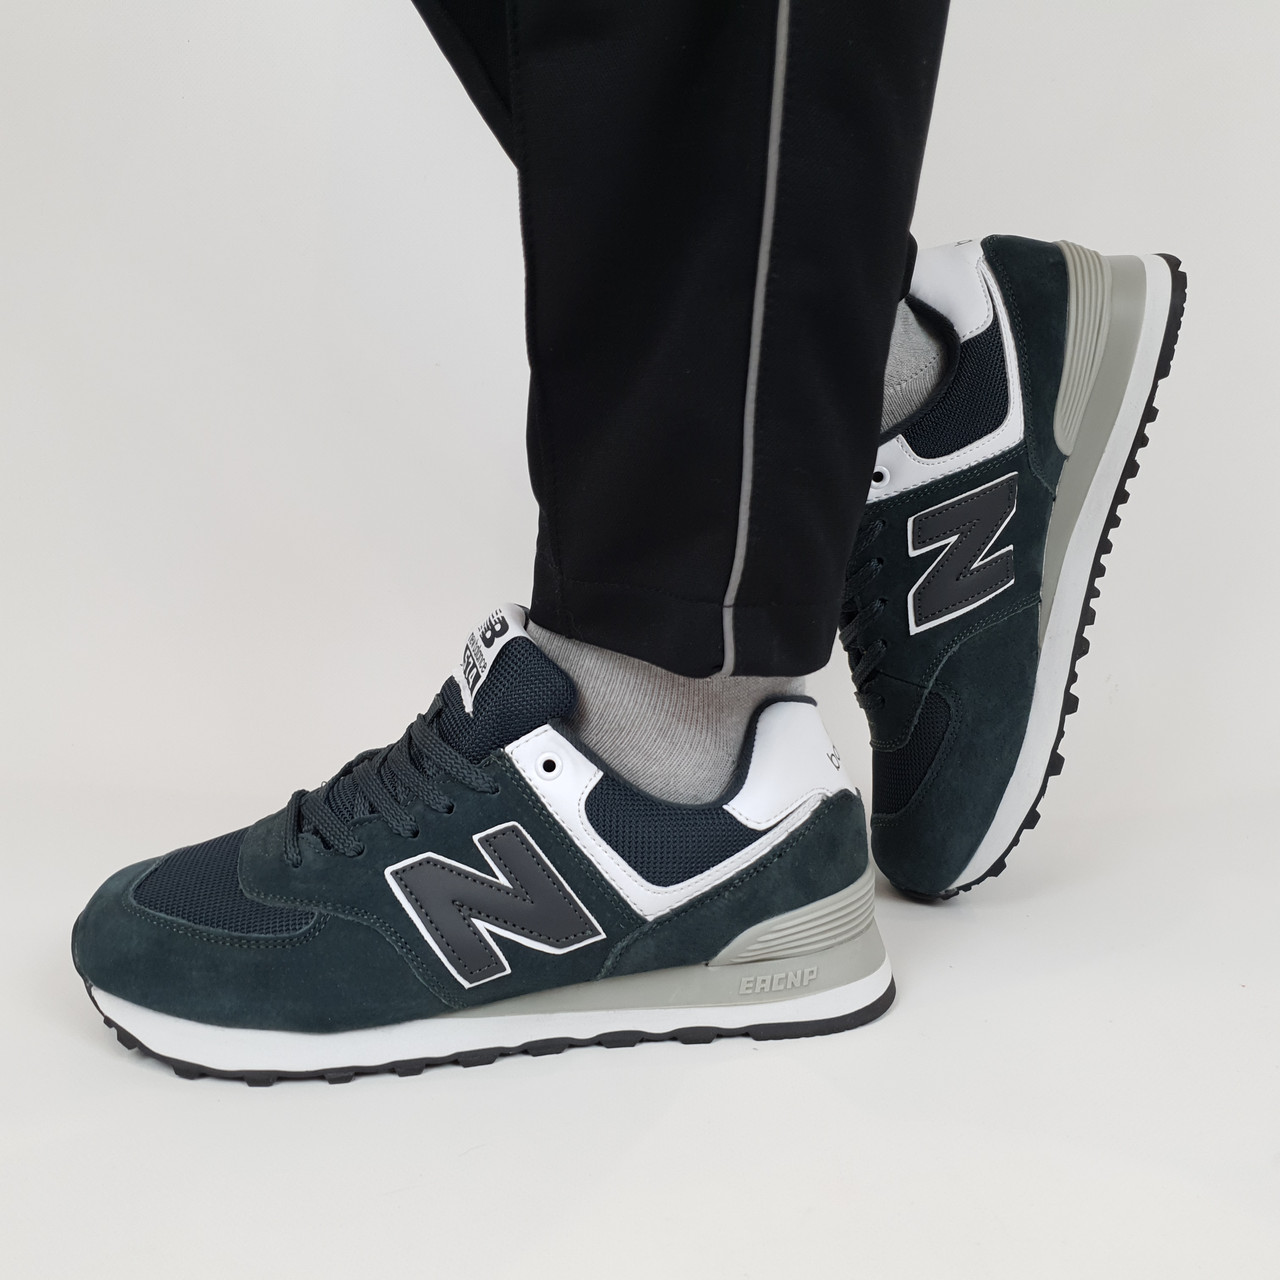 Замшеві кросівки чоловічі сірі New Balance 574 Grey. Спортивне взуття для чоловіків сіре Нью Баланс 574